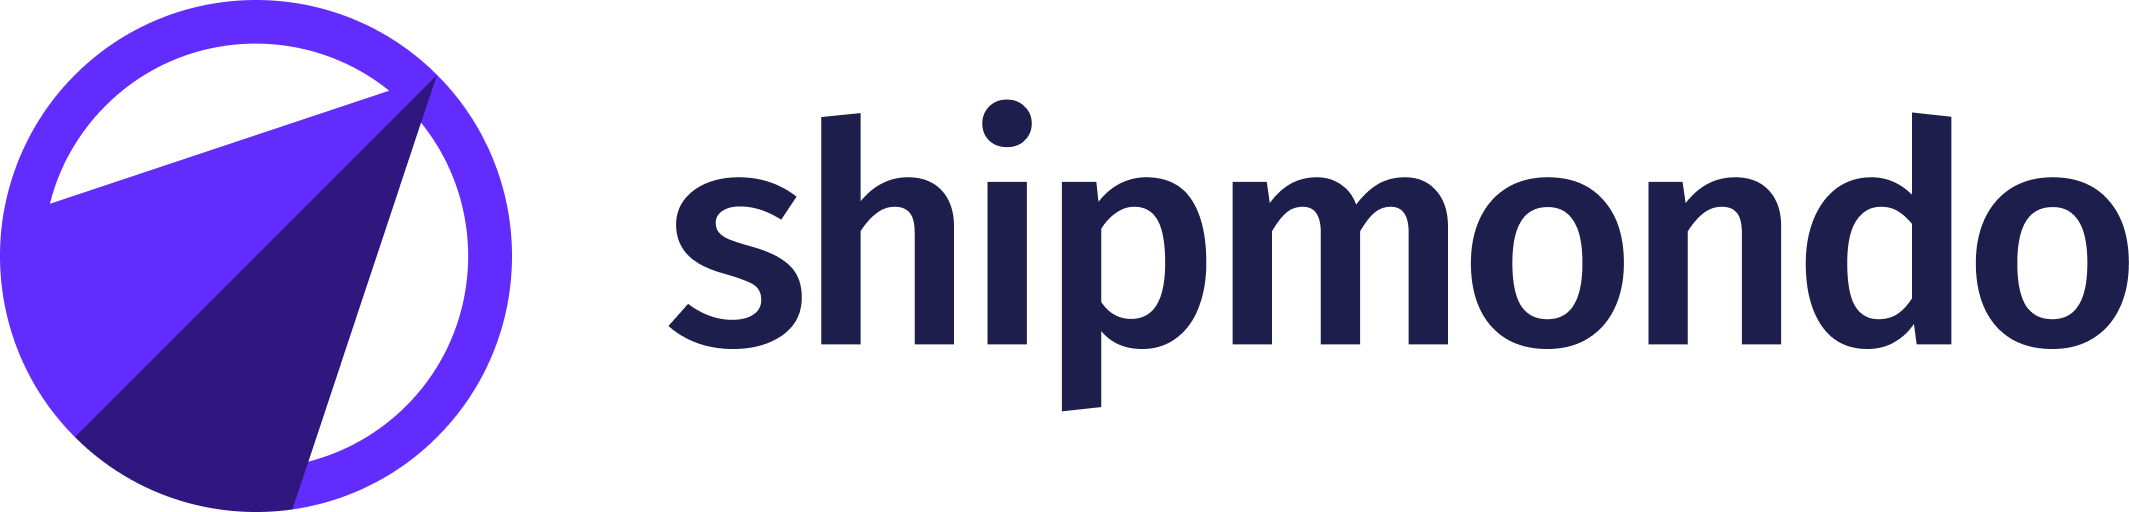 Logo shipmondo color